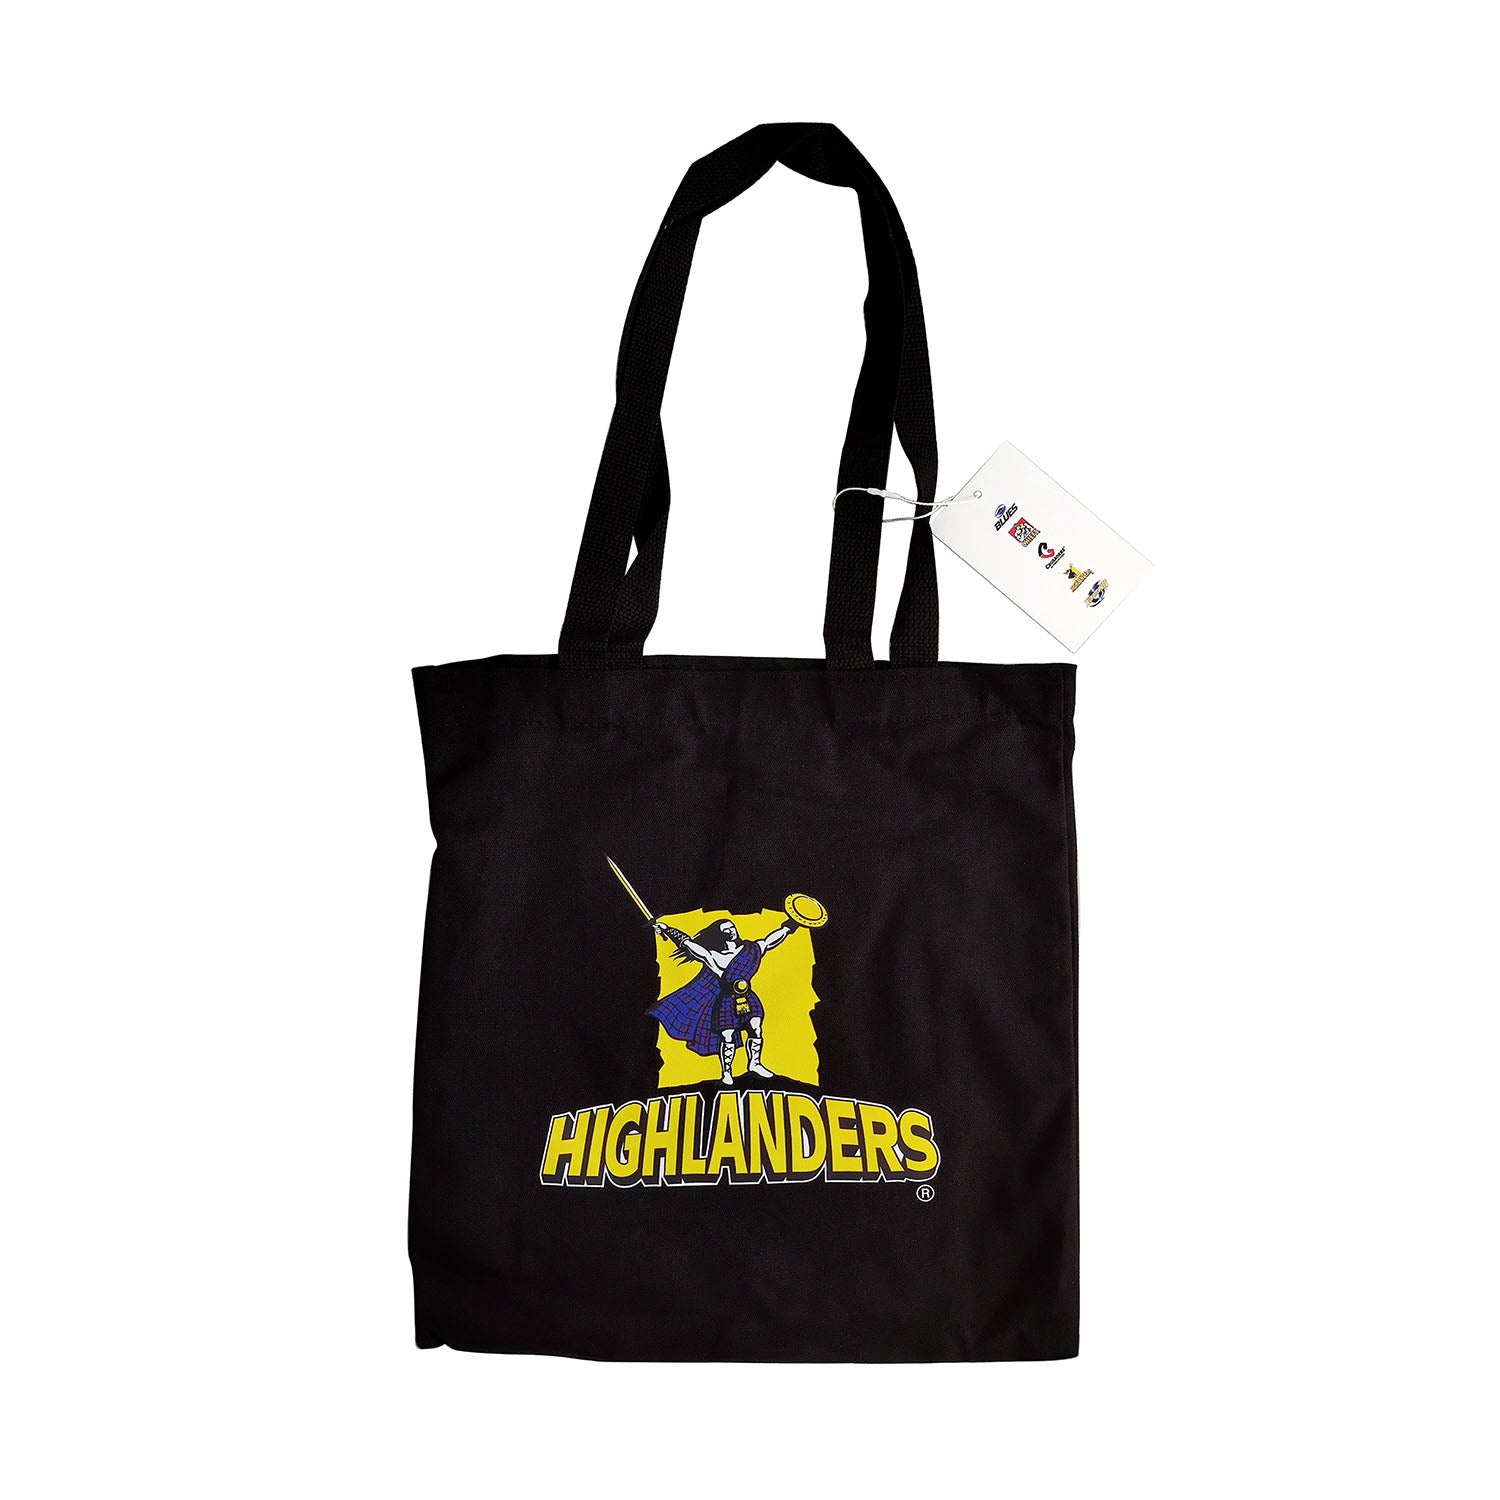 Highlanders Tote Bag